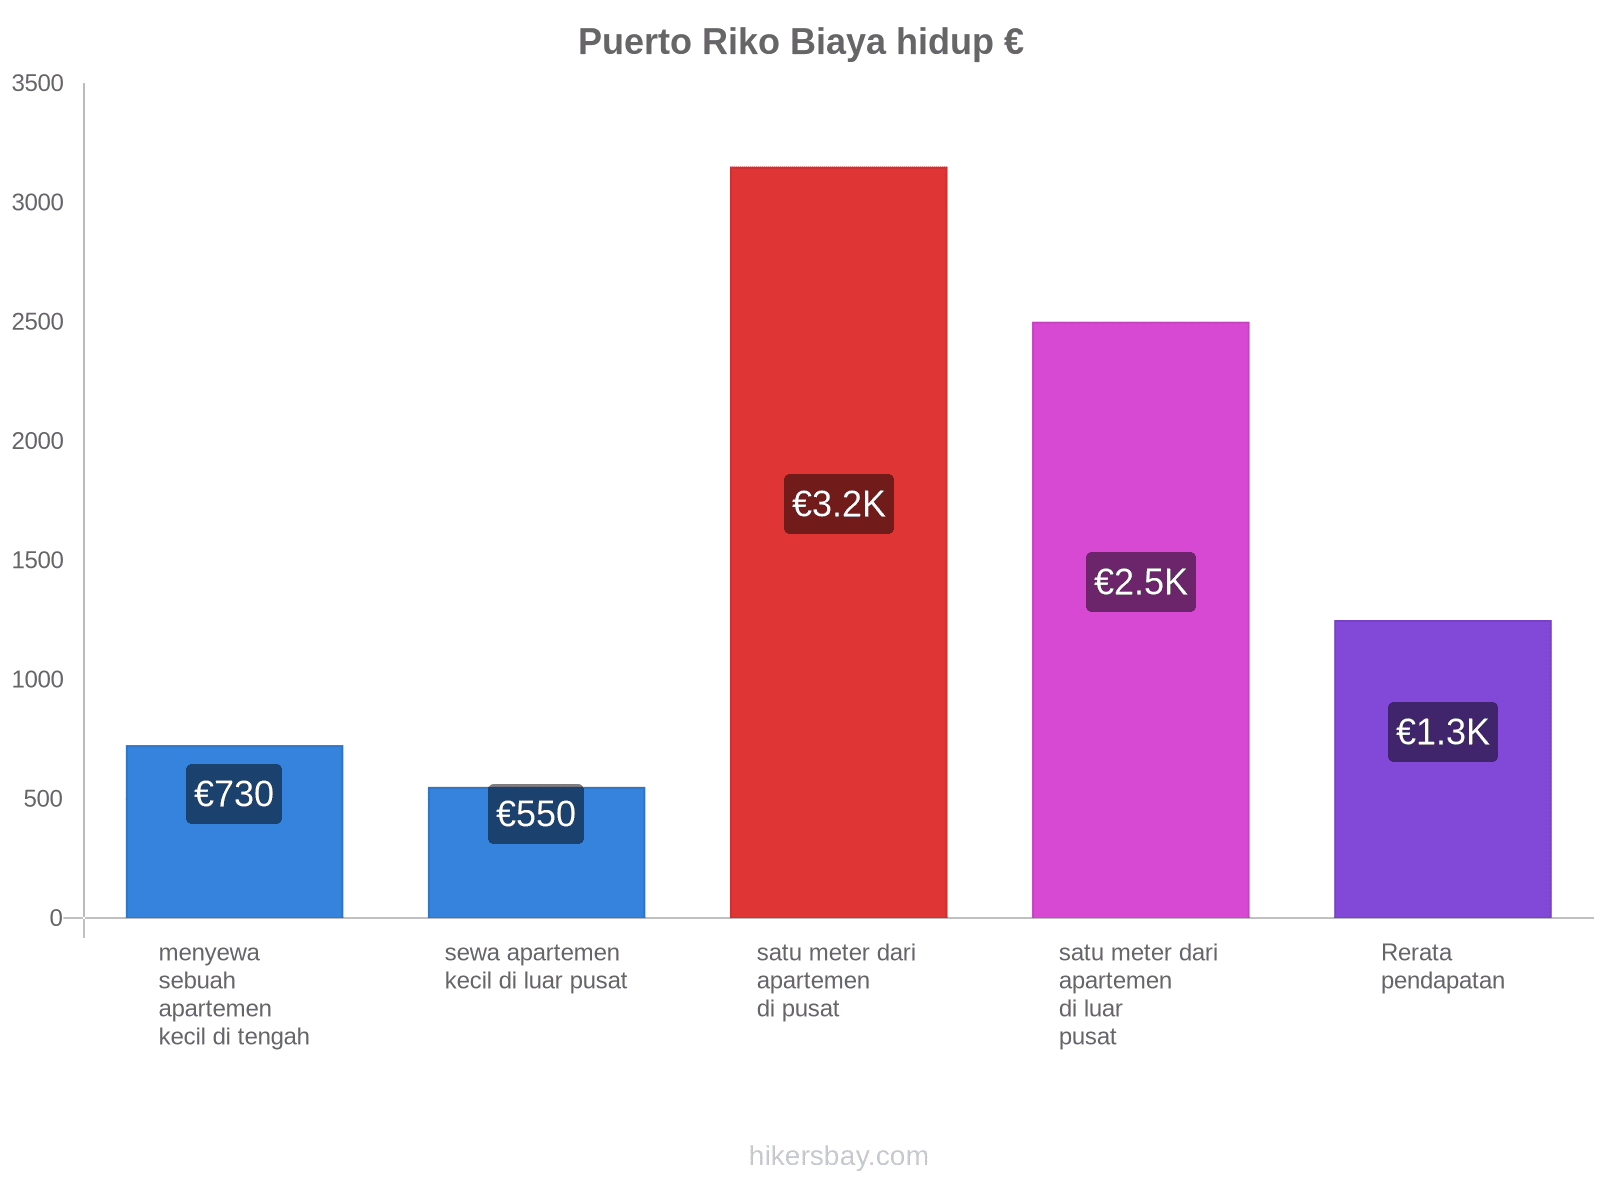 Puerto Riko biaya hidup hikersbay.com